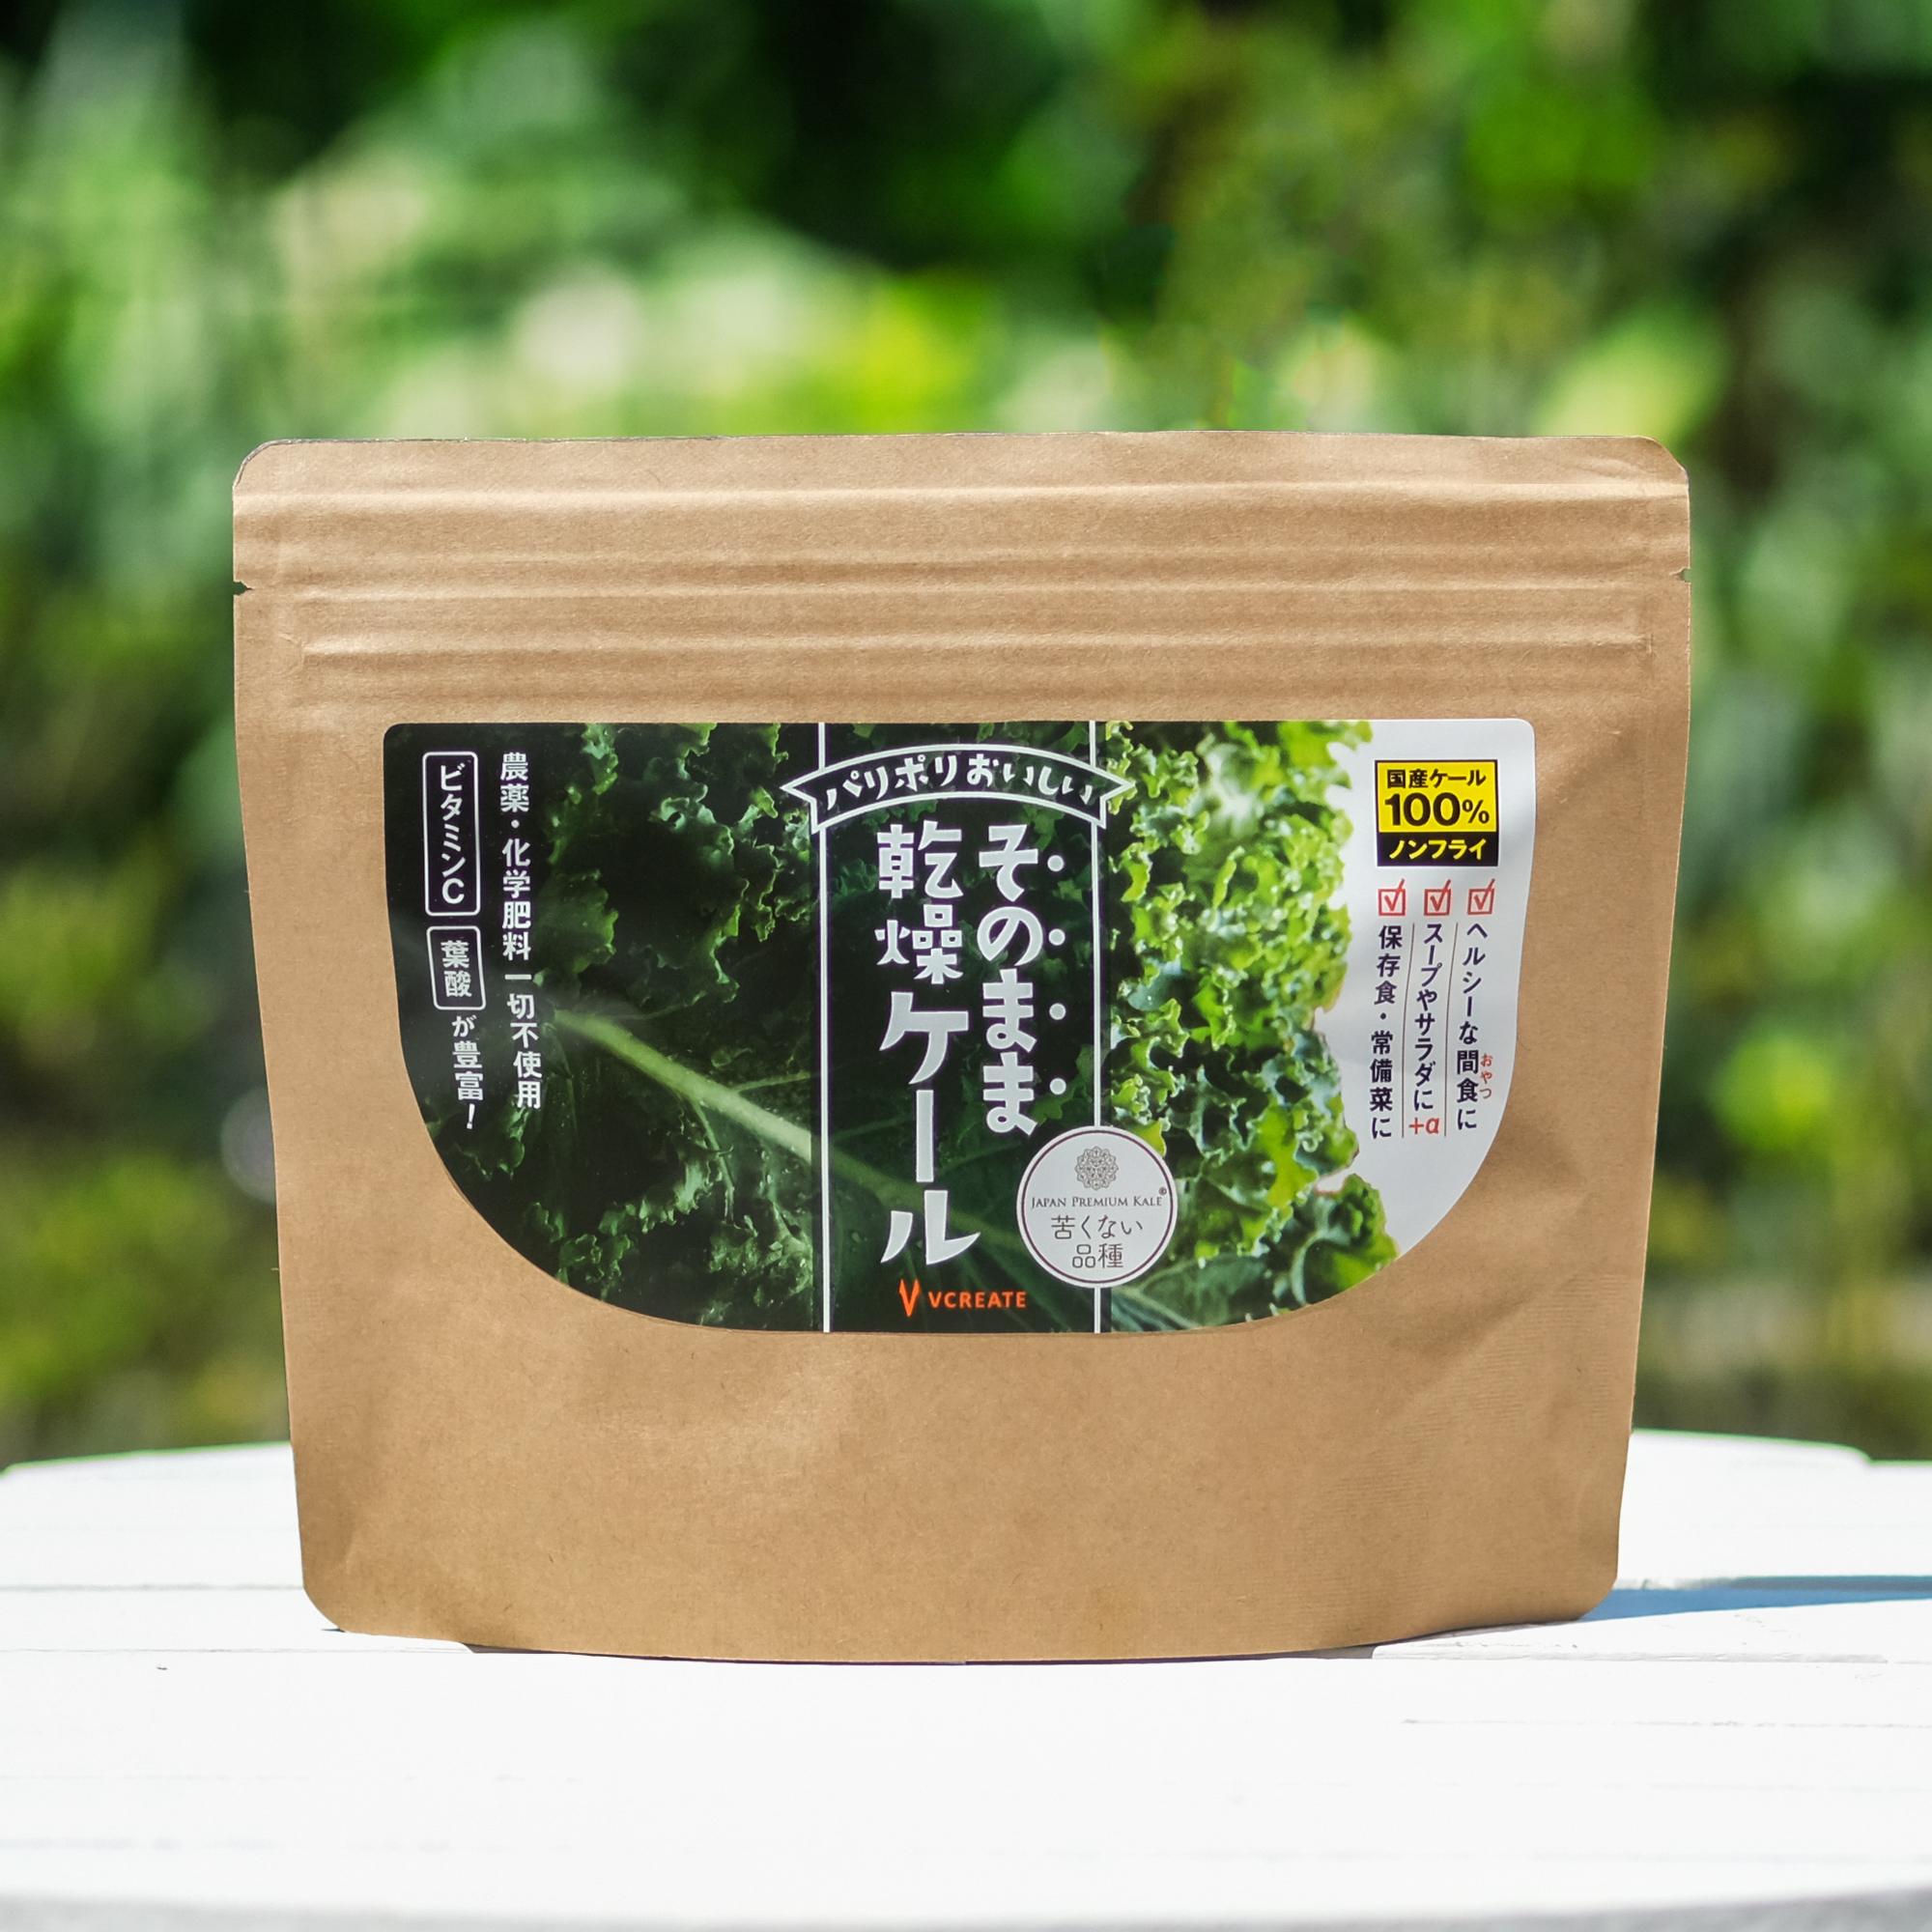 新商品 そのまま乾燥ケール100 チップス 発売 ジャパンプレミアムケール Japan Premium Kale